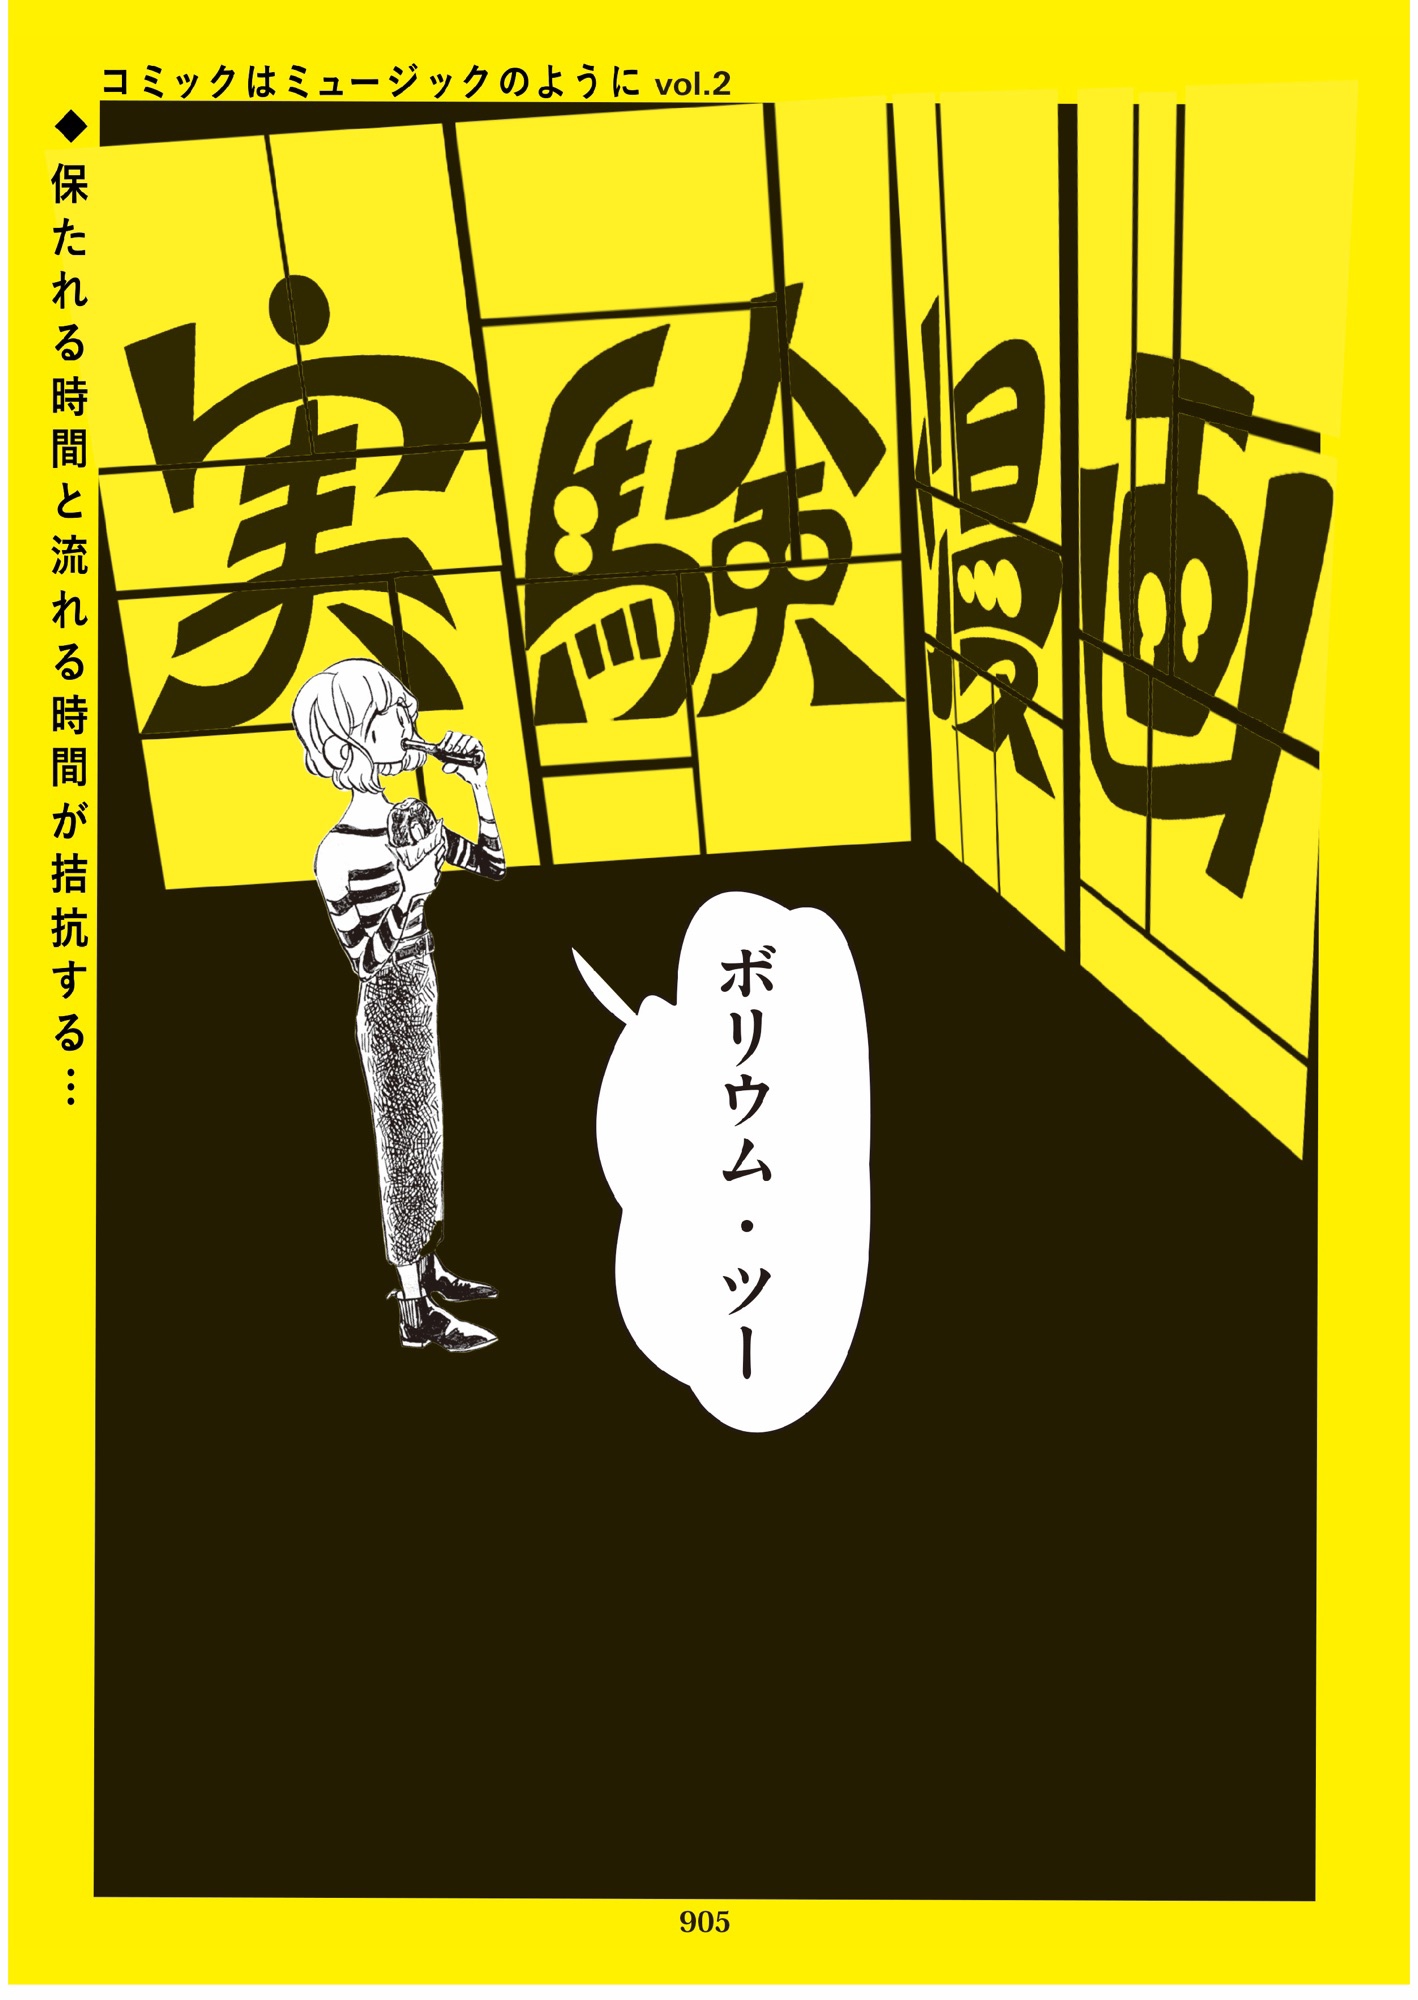 東春予 実験漫画 コミックはミュージックのようにvol 2 Kameido Art Center